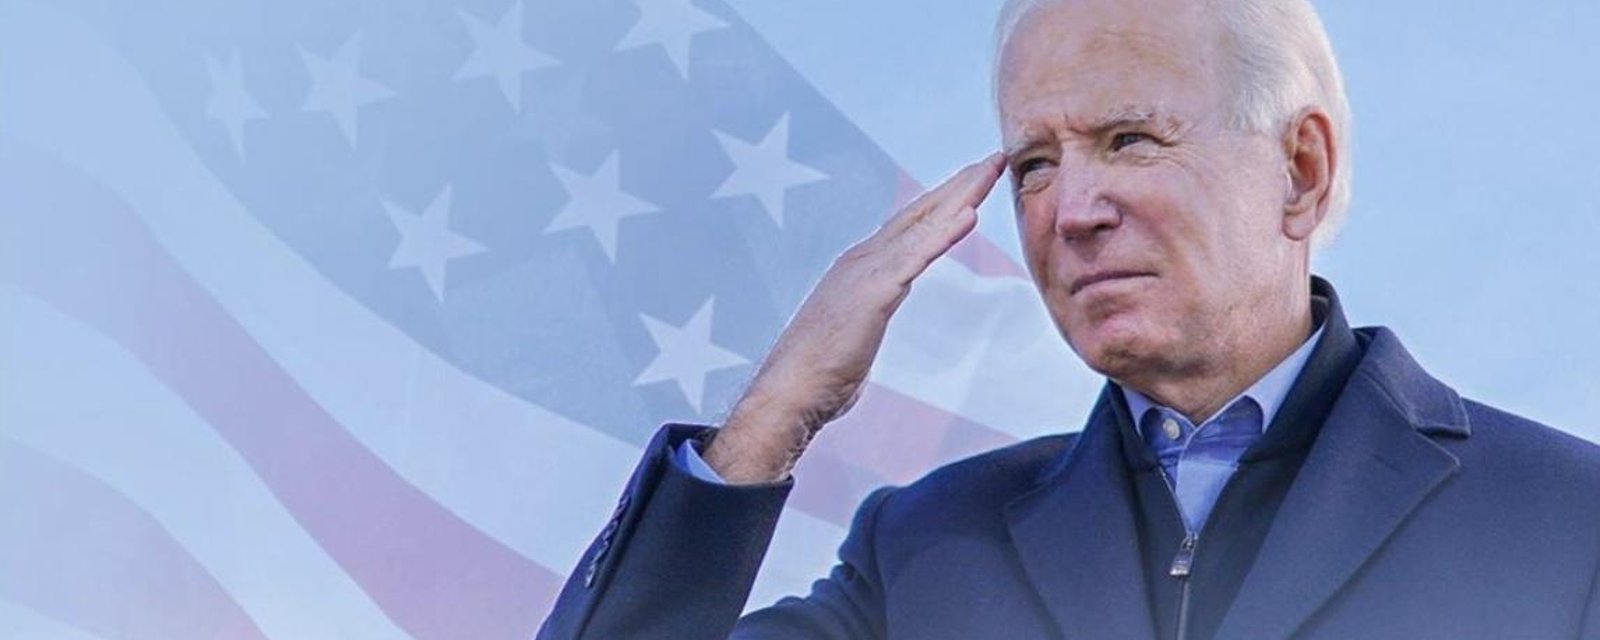 DERNIÈRE HEURE: Joe Biden vient de prendre la tête en Pennsylvanie